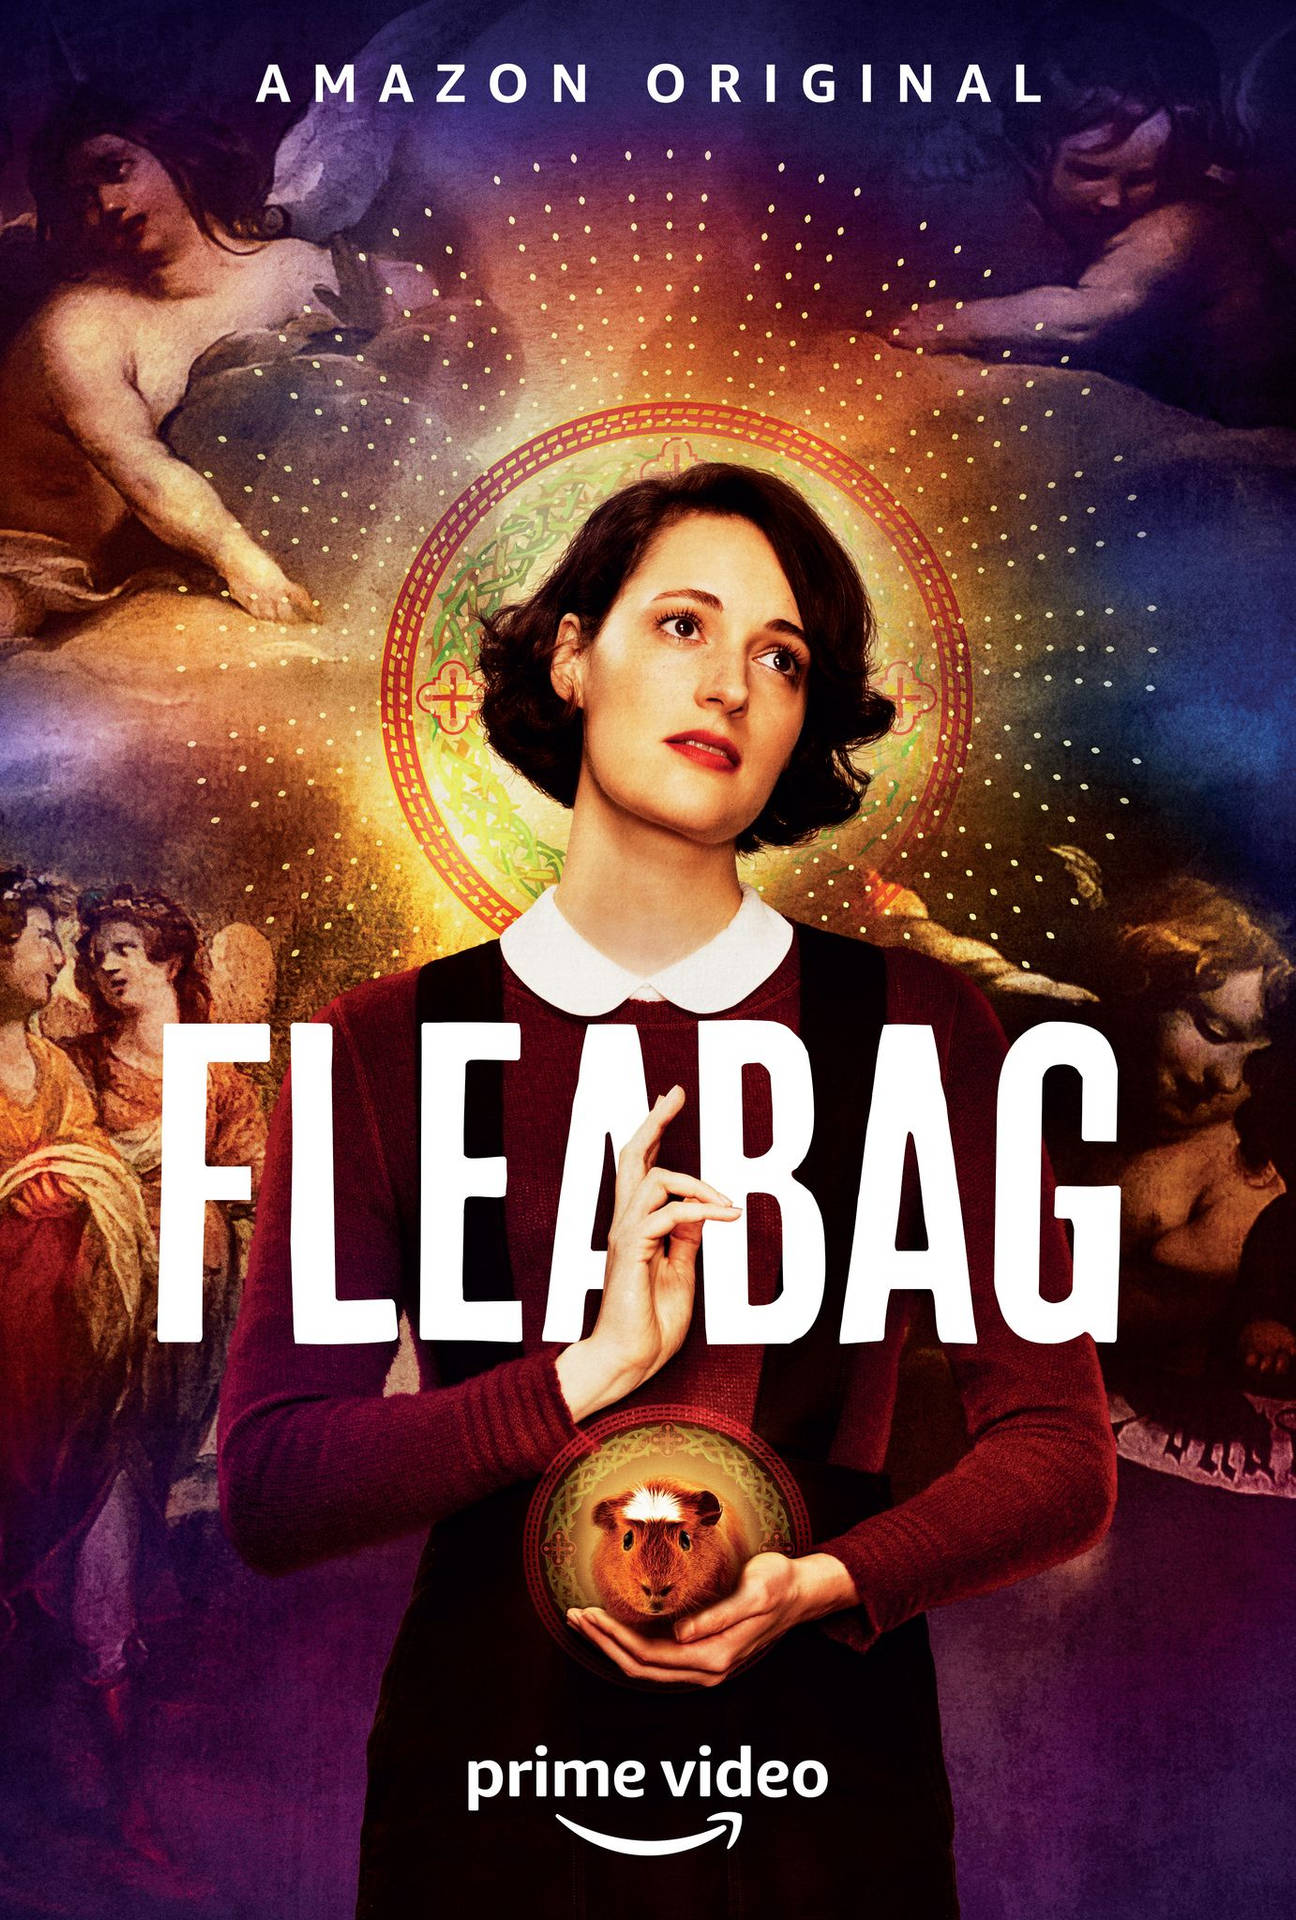 Fleabag Official Poster Background